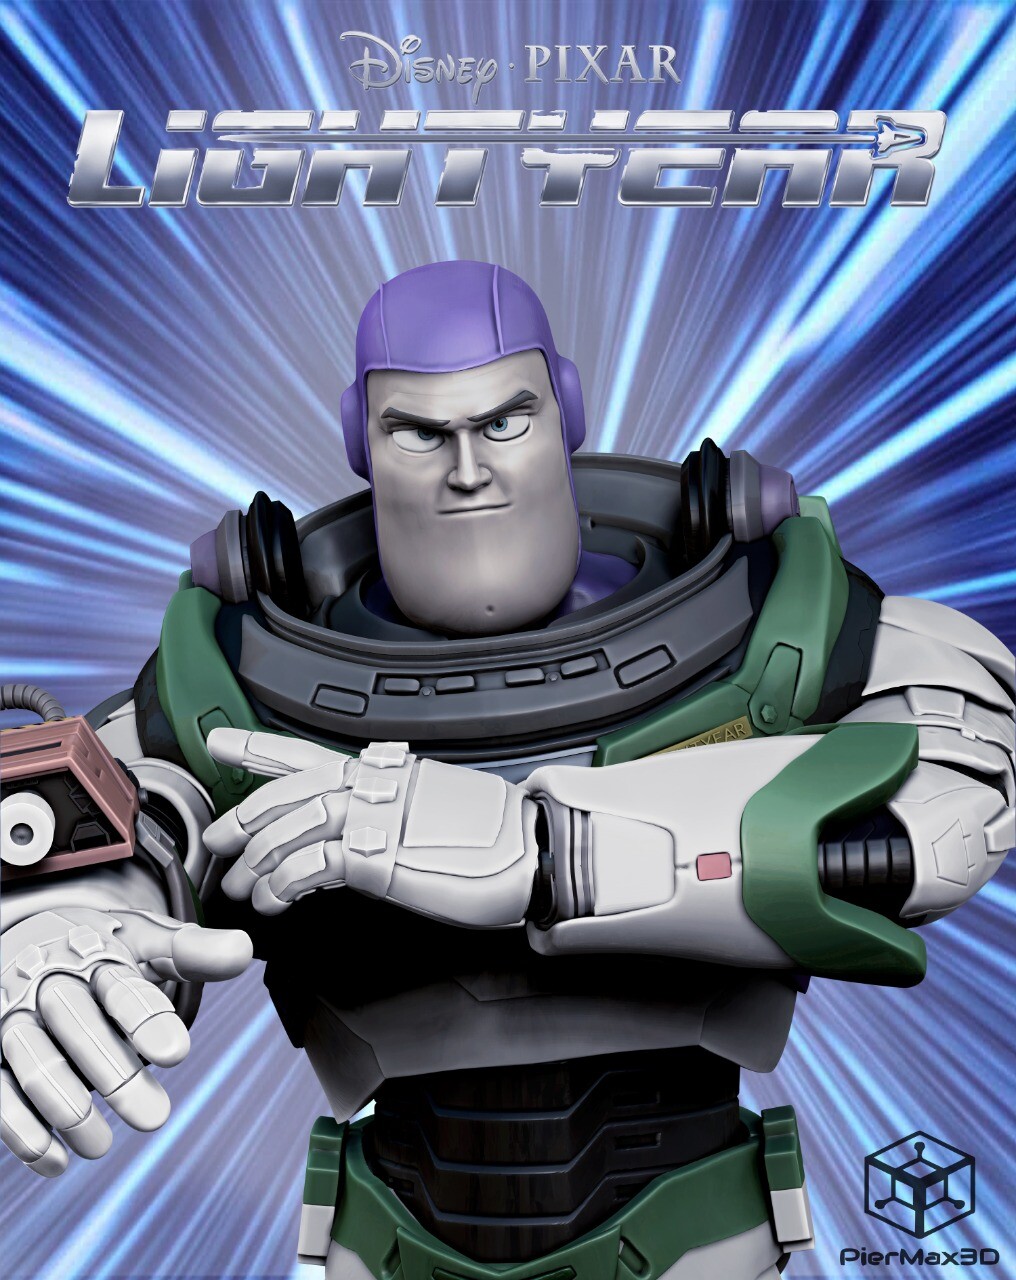 Buzz Lightyear - Lightyear Movie.